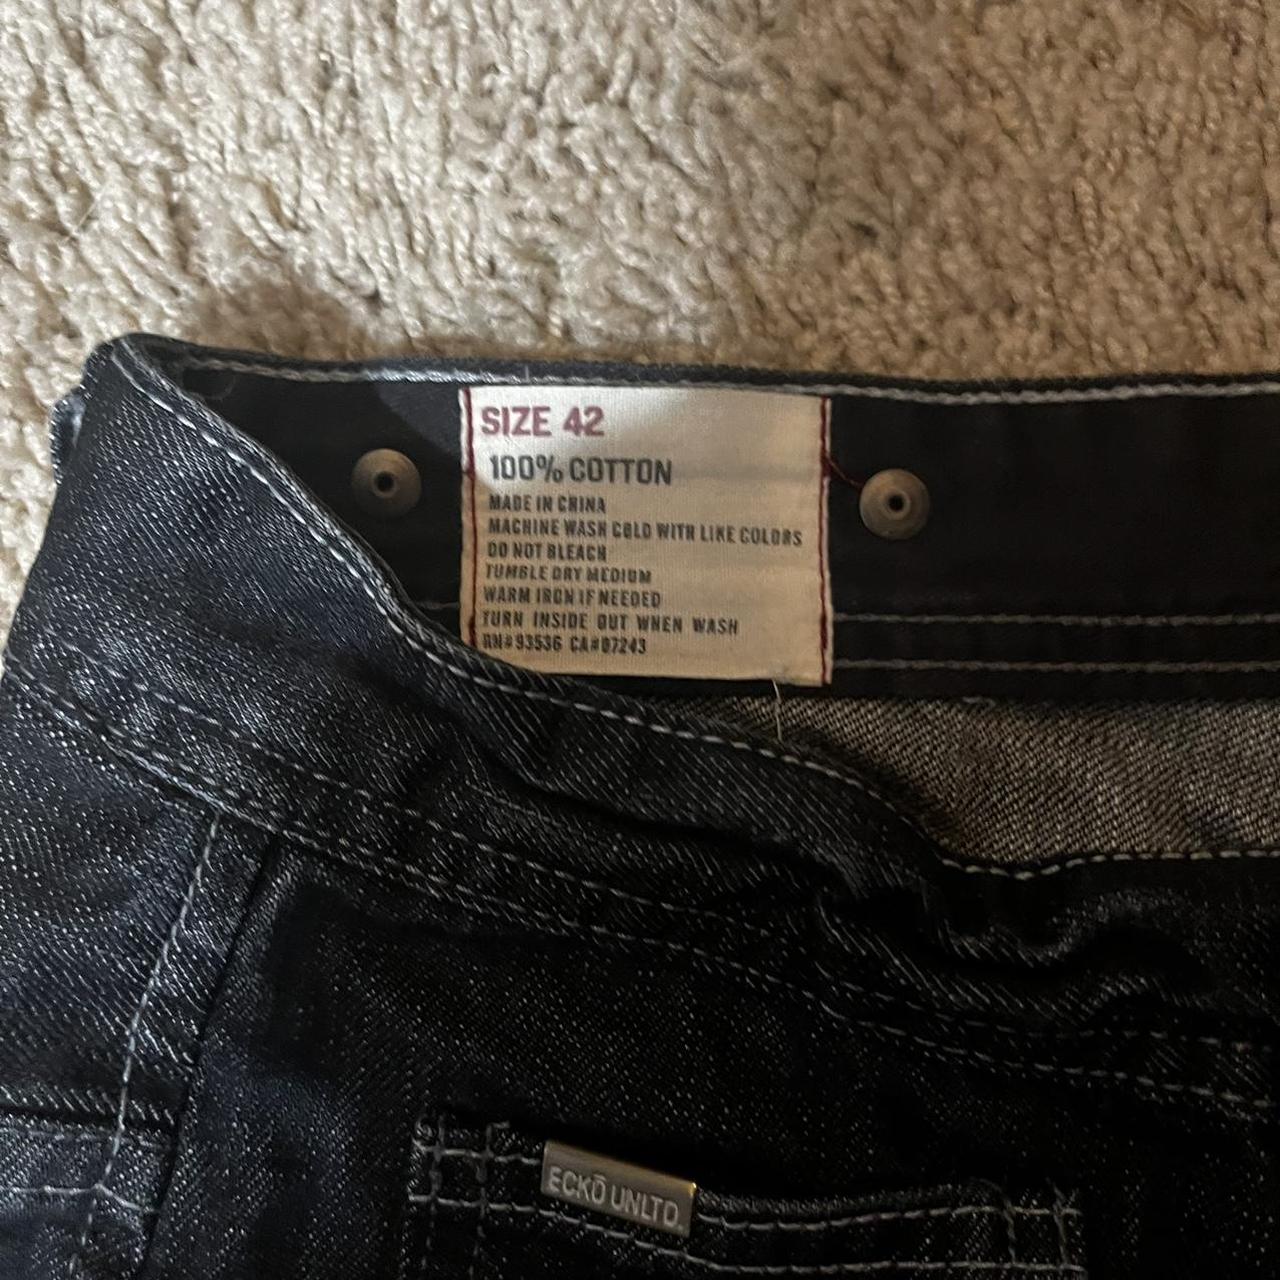 Super Baggy Ecko Unltd Jeans Size 42 22” leg opening... - Depop